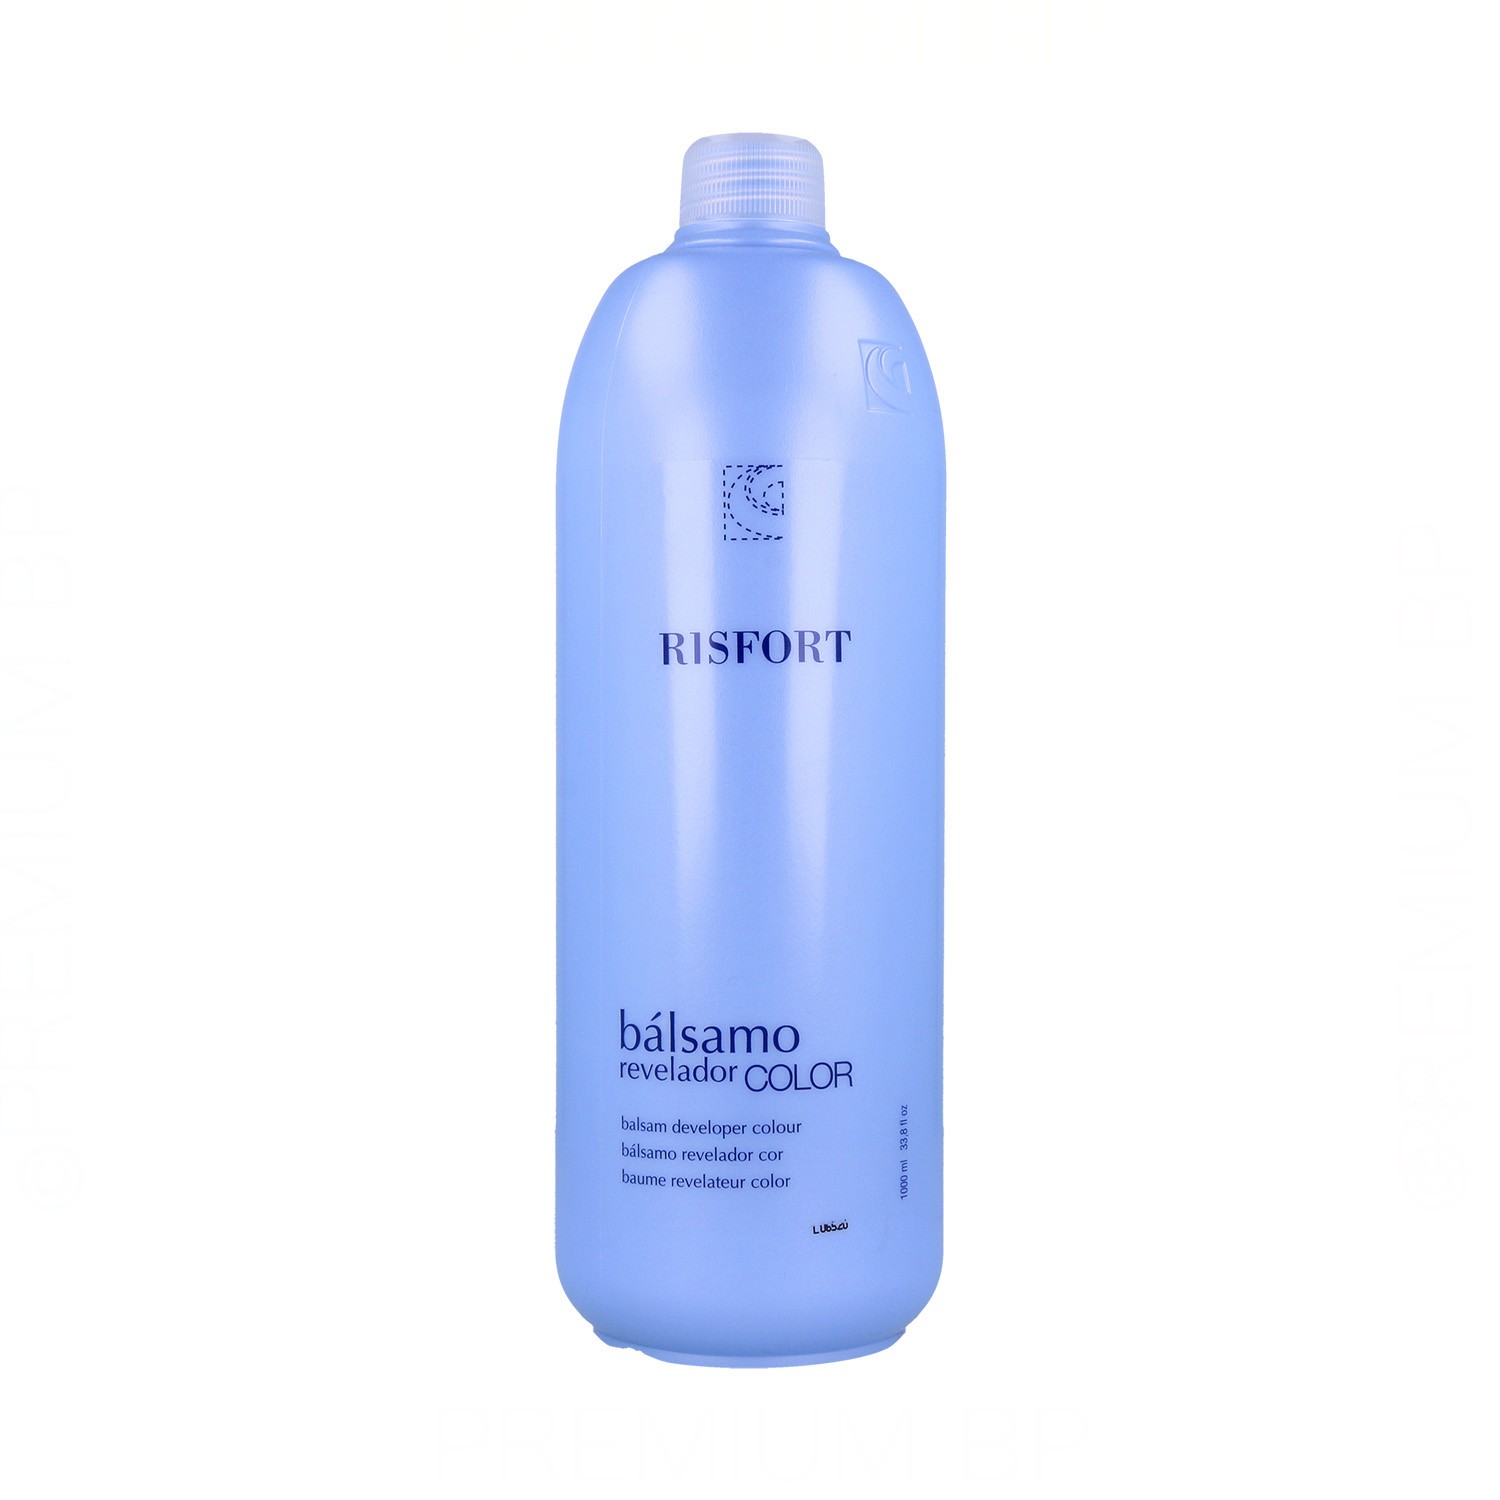 Risfort Balsamo Oxidizer di Colore (2.1%) 1000 ml